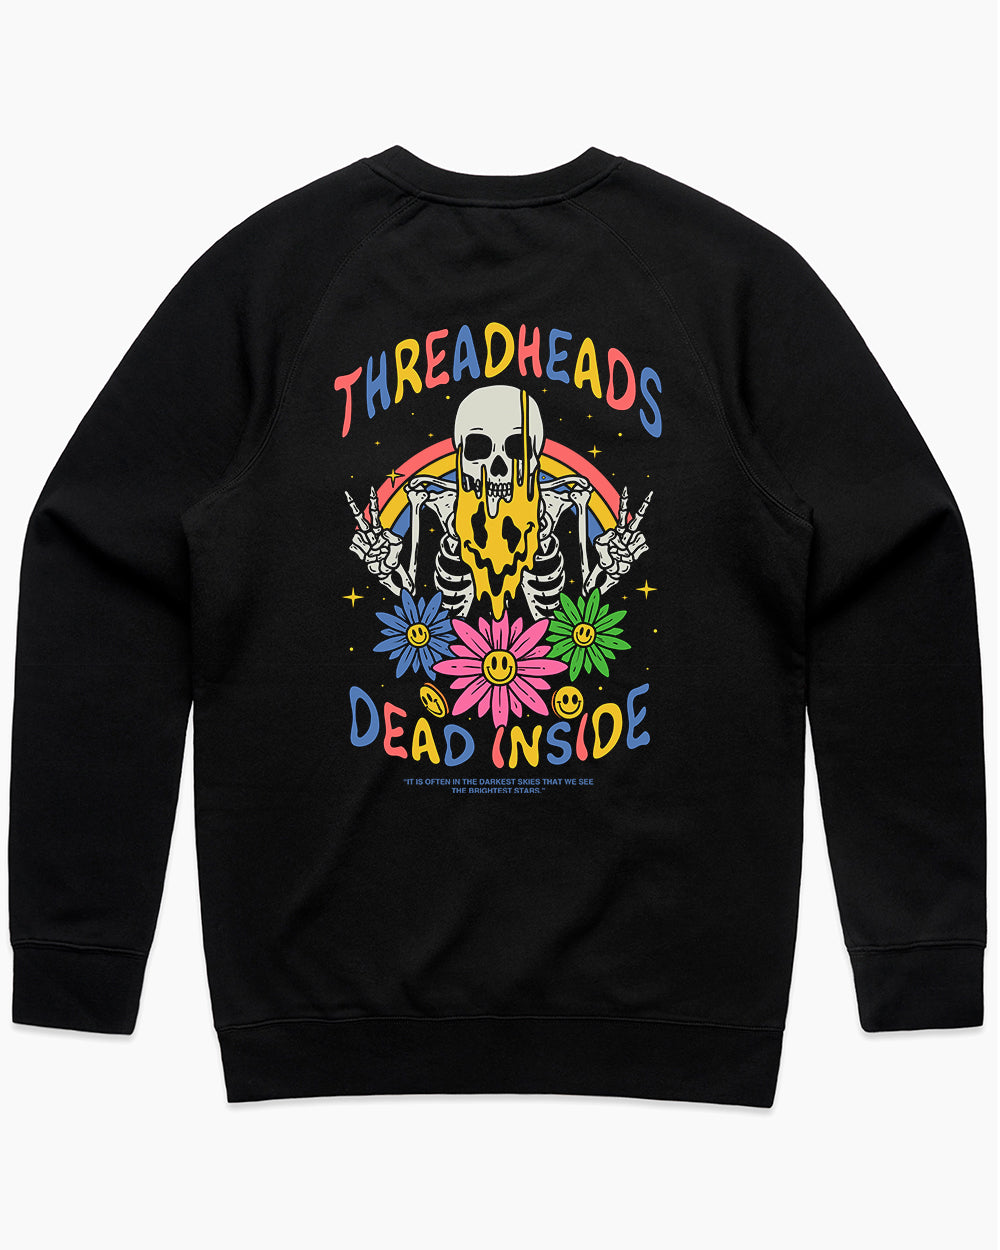 Melting Dead Inside Sweater Australia Online #colour_black